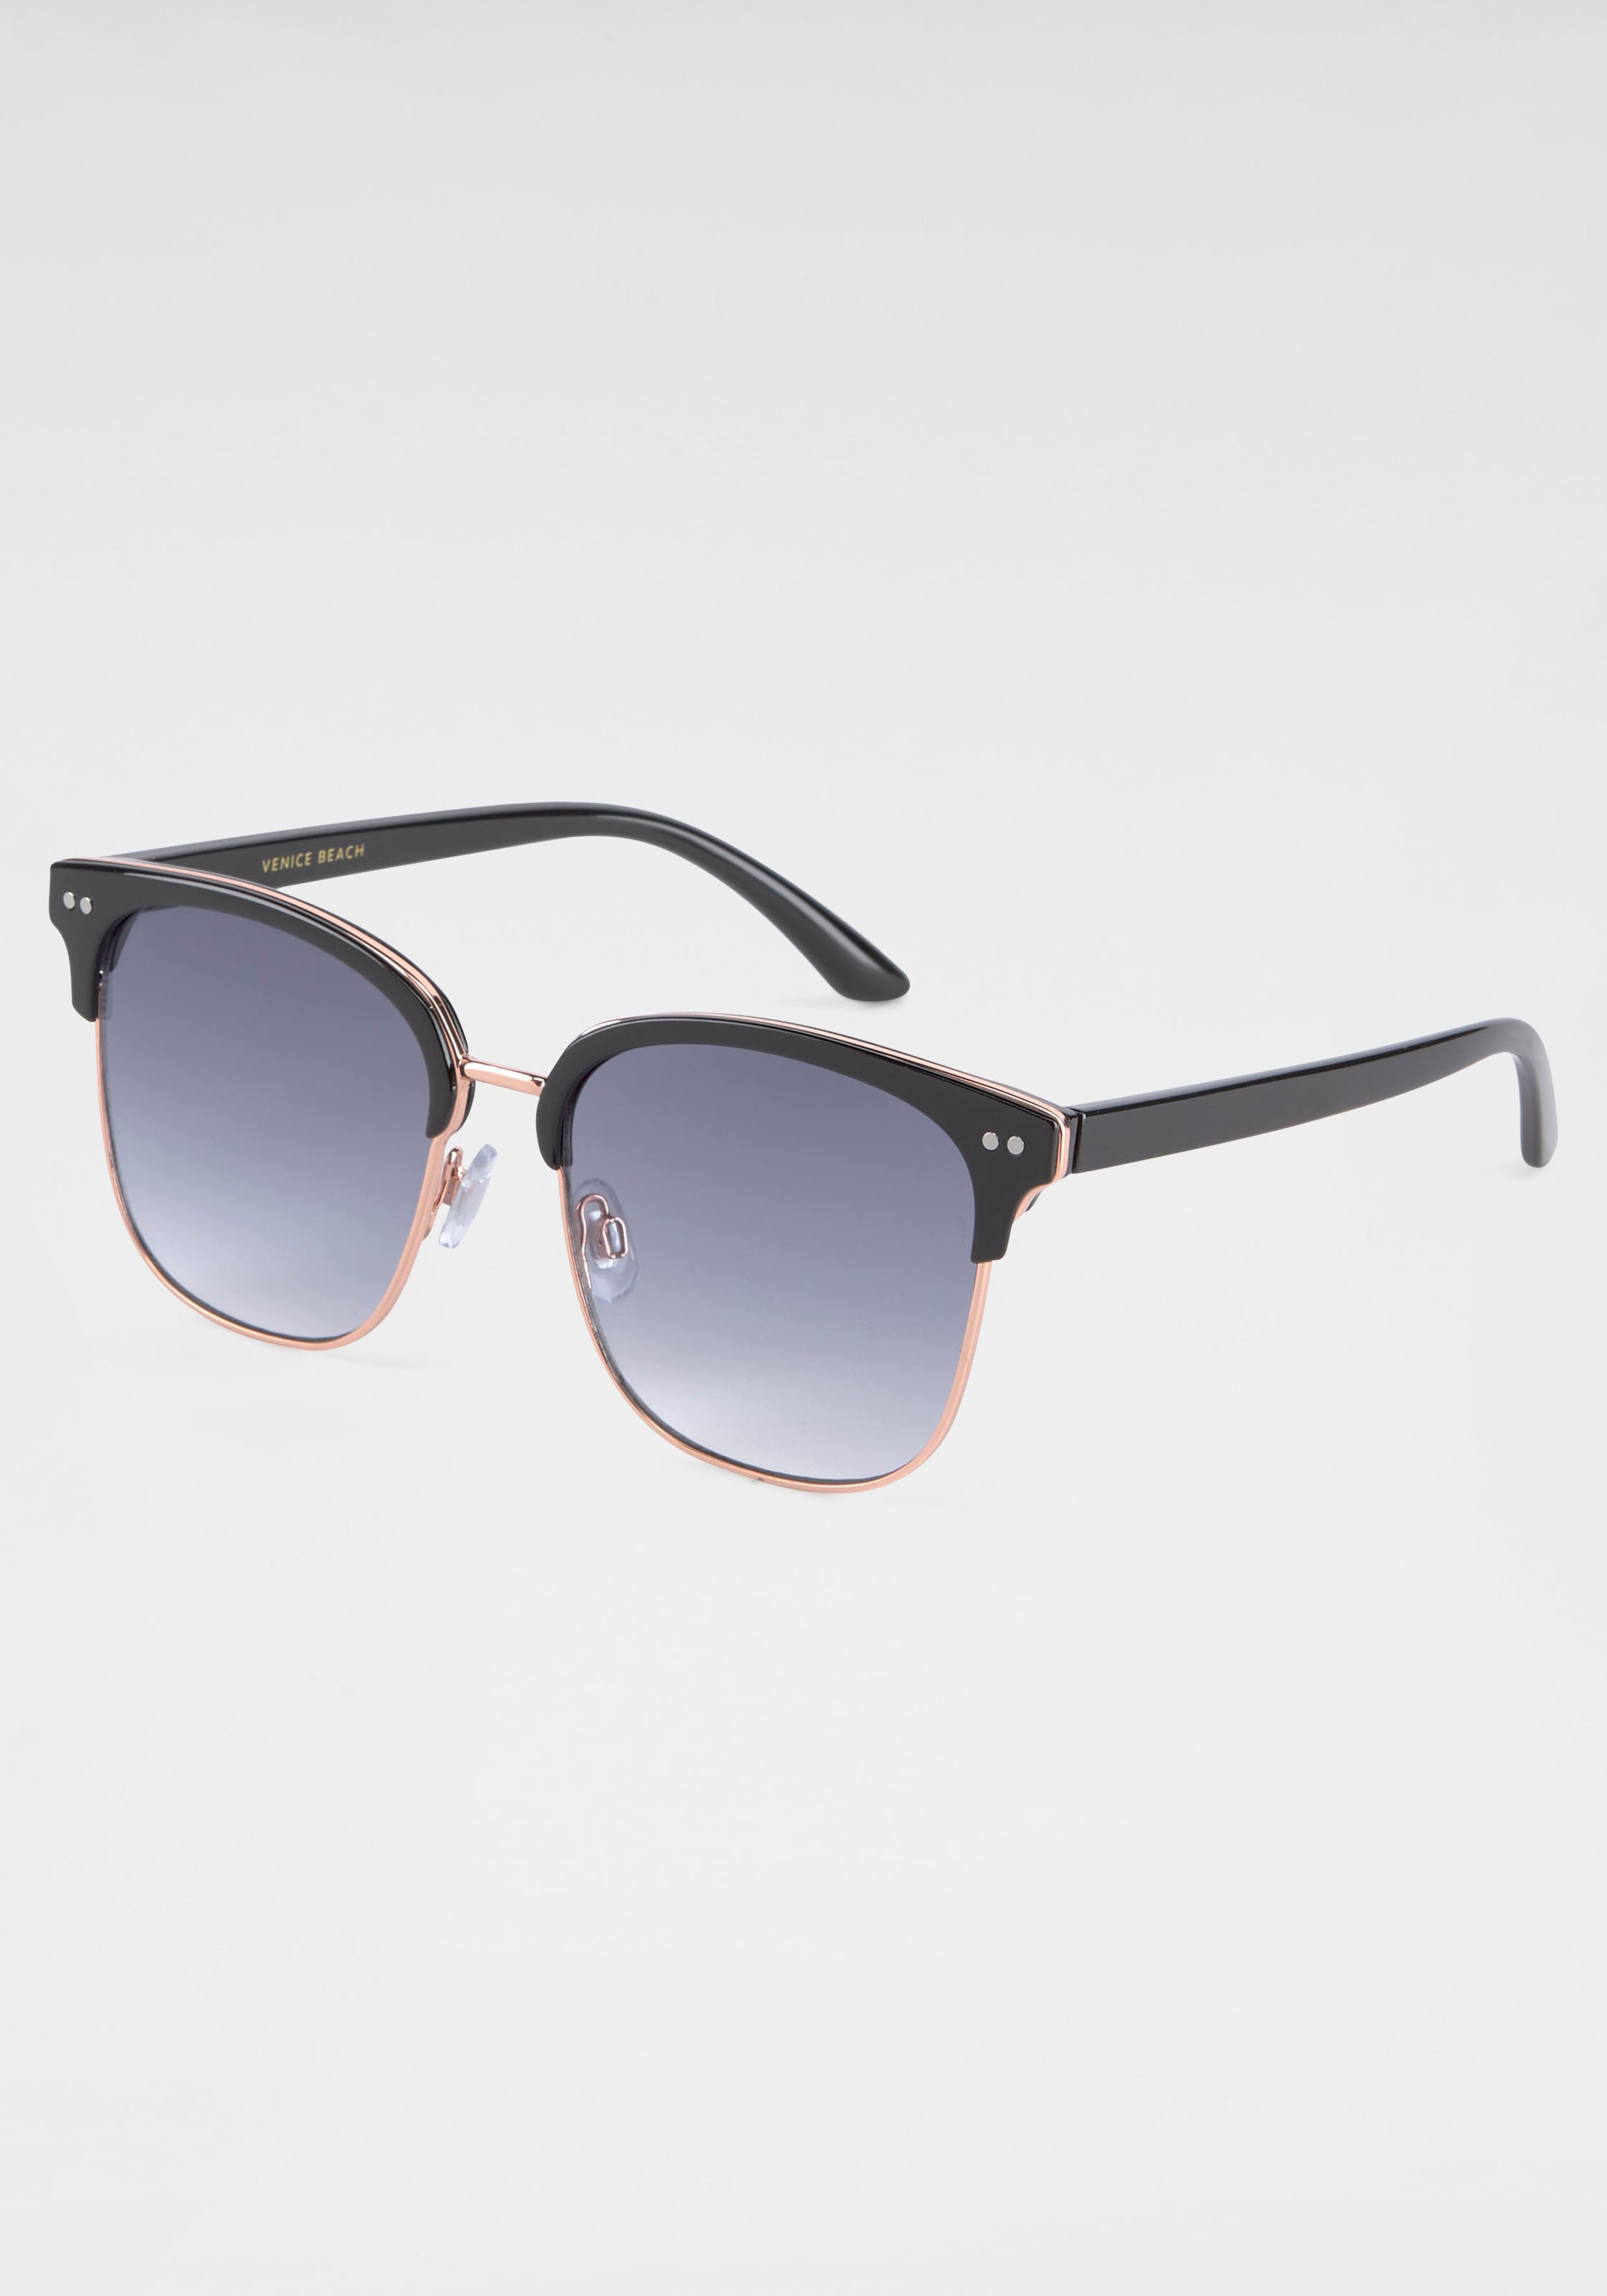 IN versandkostenfrei ♕ Gläsern BACK bestellen gebogenen Sonnenbrille, BLACK mit Eyewear